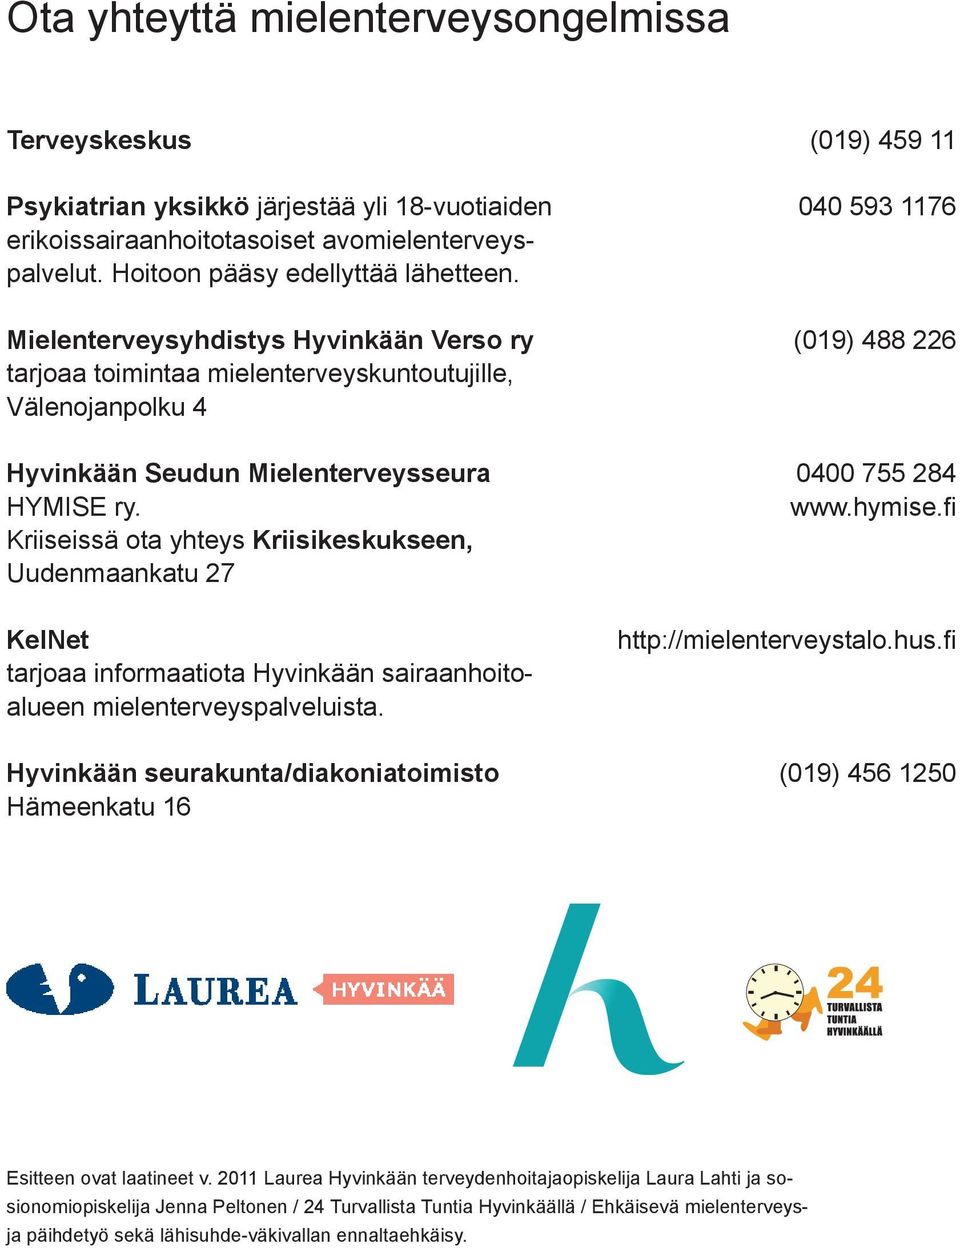 Kriiseissä ota yhteys Kriisikeskukseen, Uudenmaankatu 27 KelNet tarjoaa informaatiota Hyvinkään sairaanhoitoalueen mielenterveyspalveluista.